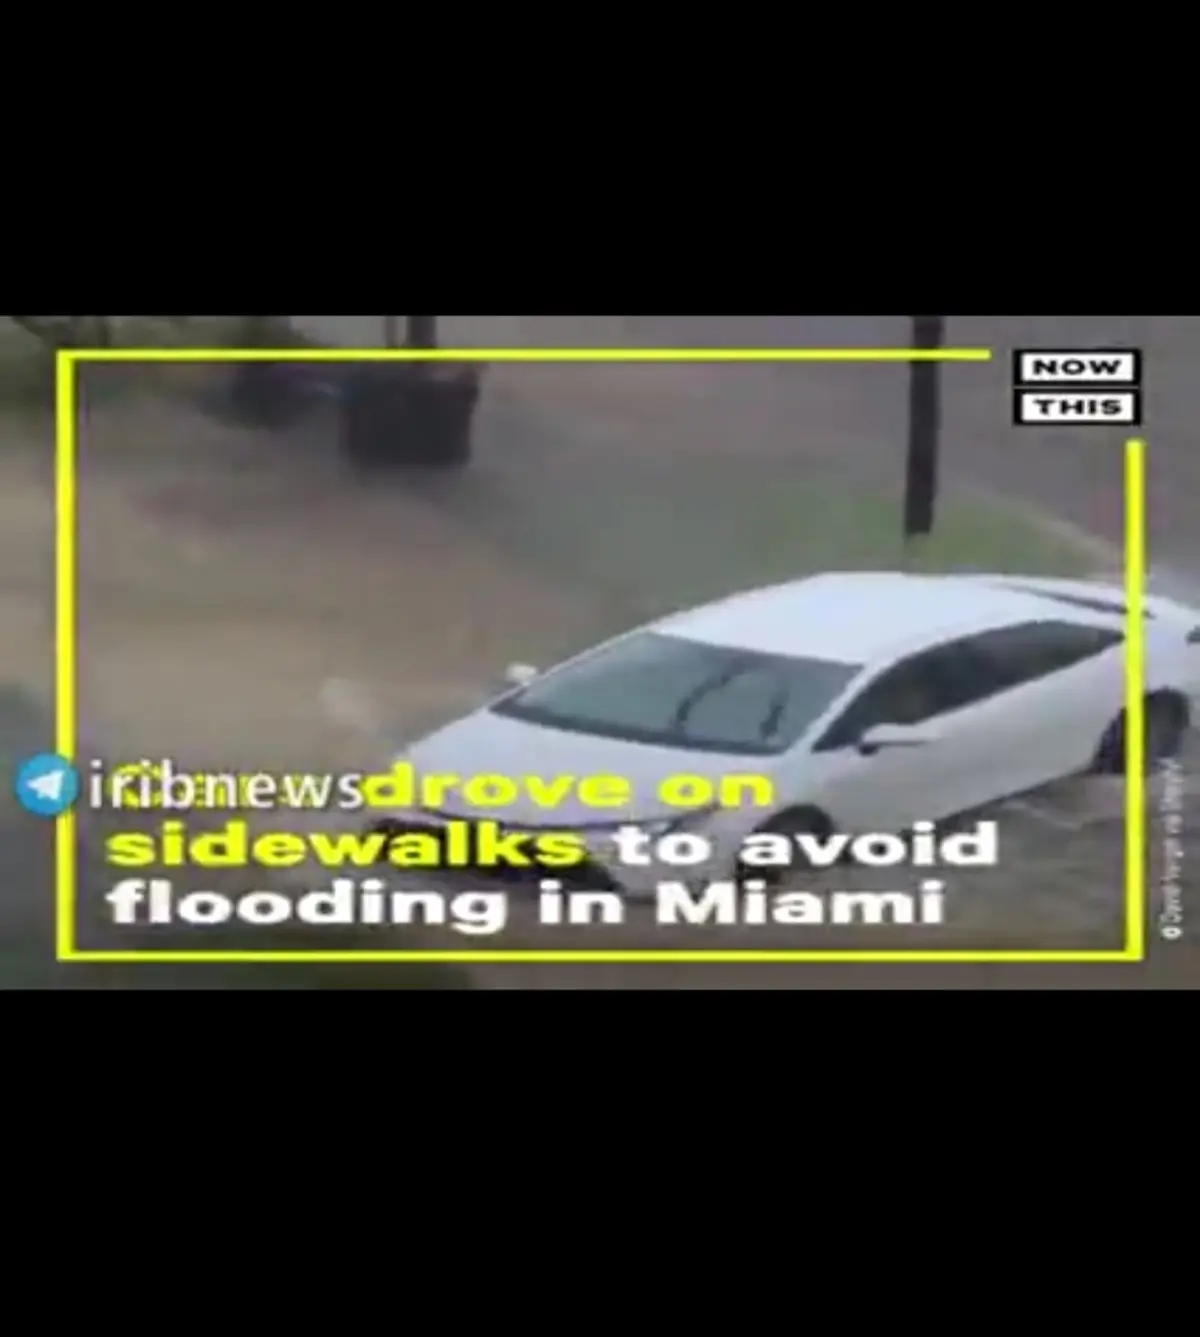 جاری شدن سیل در فلوریدا در پی بارش شدید باران+فیلم